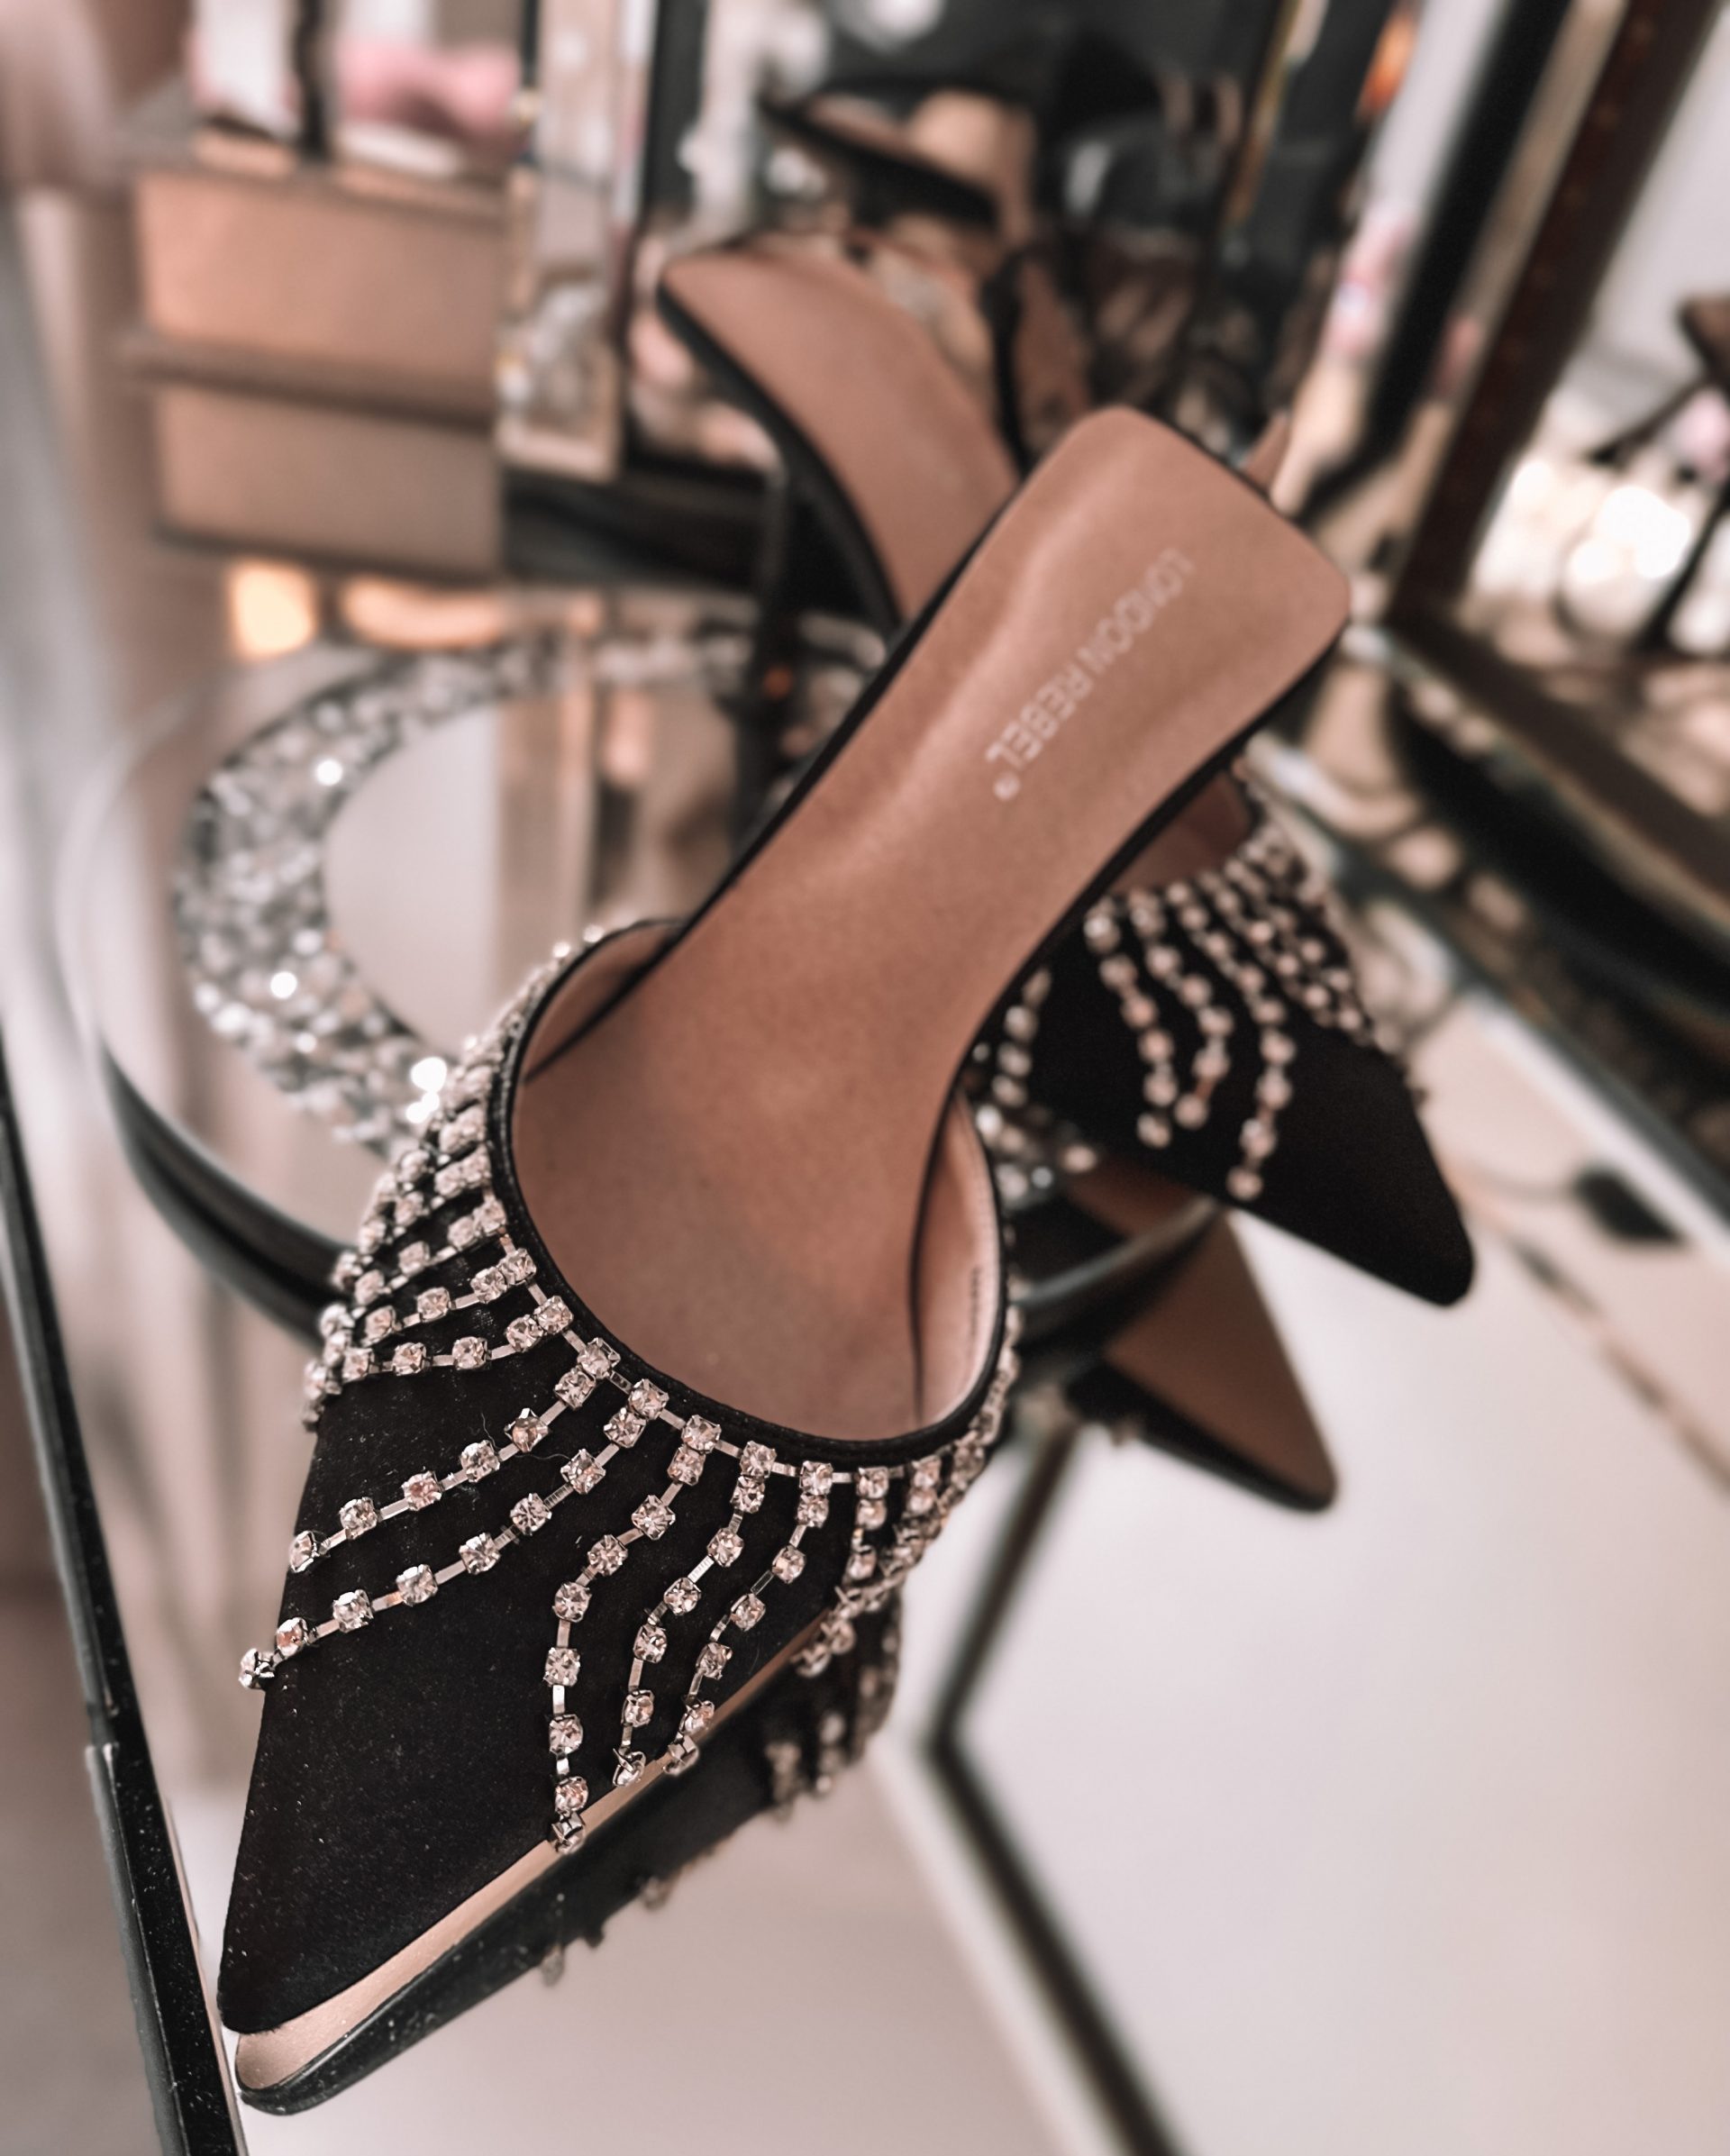 London Rebel embellished pointed heeled shoes in black satin